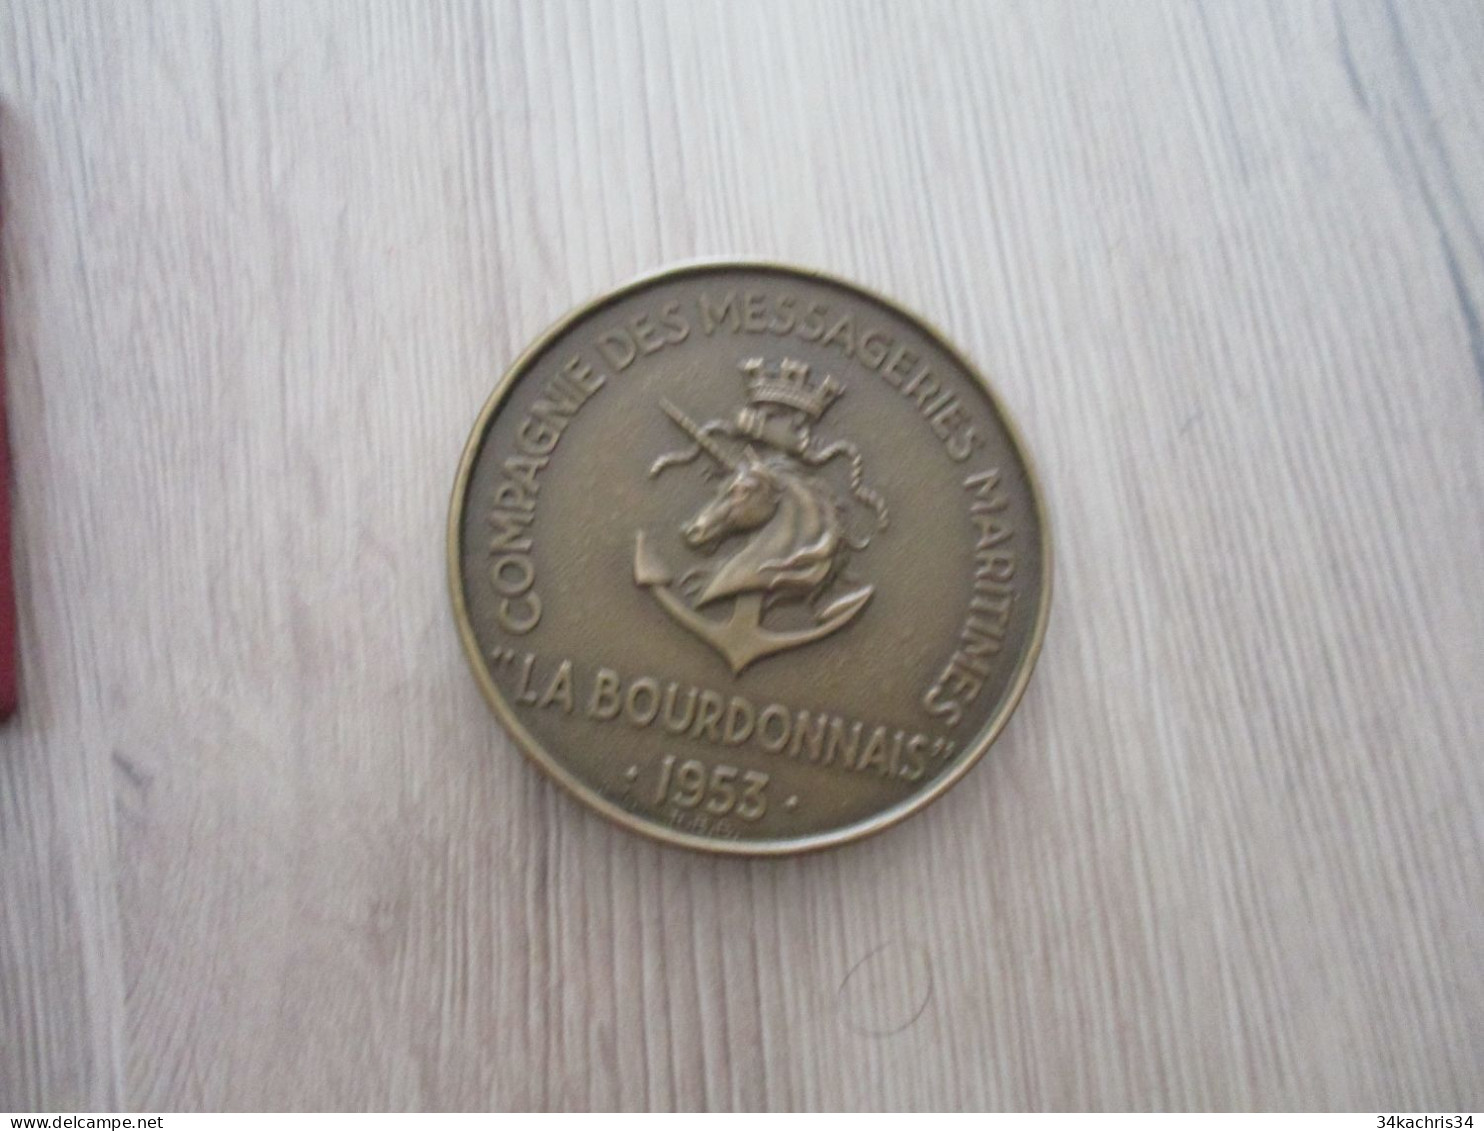 Médaille De Table La Bourdonnais Compagnies Messageries Maritimes 1953 5.5 Diam 100g Environs Dans Sa Boite - Decoración Maritima